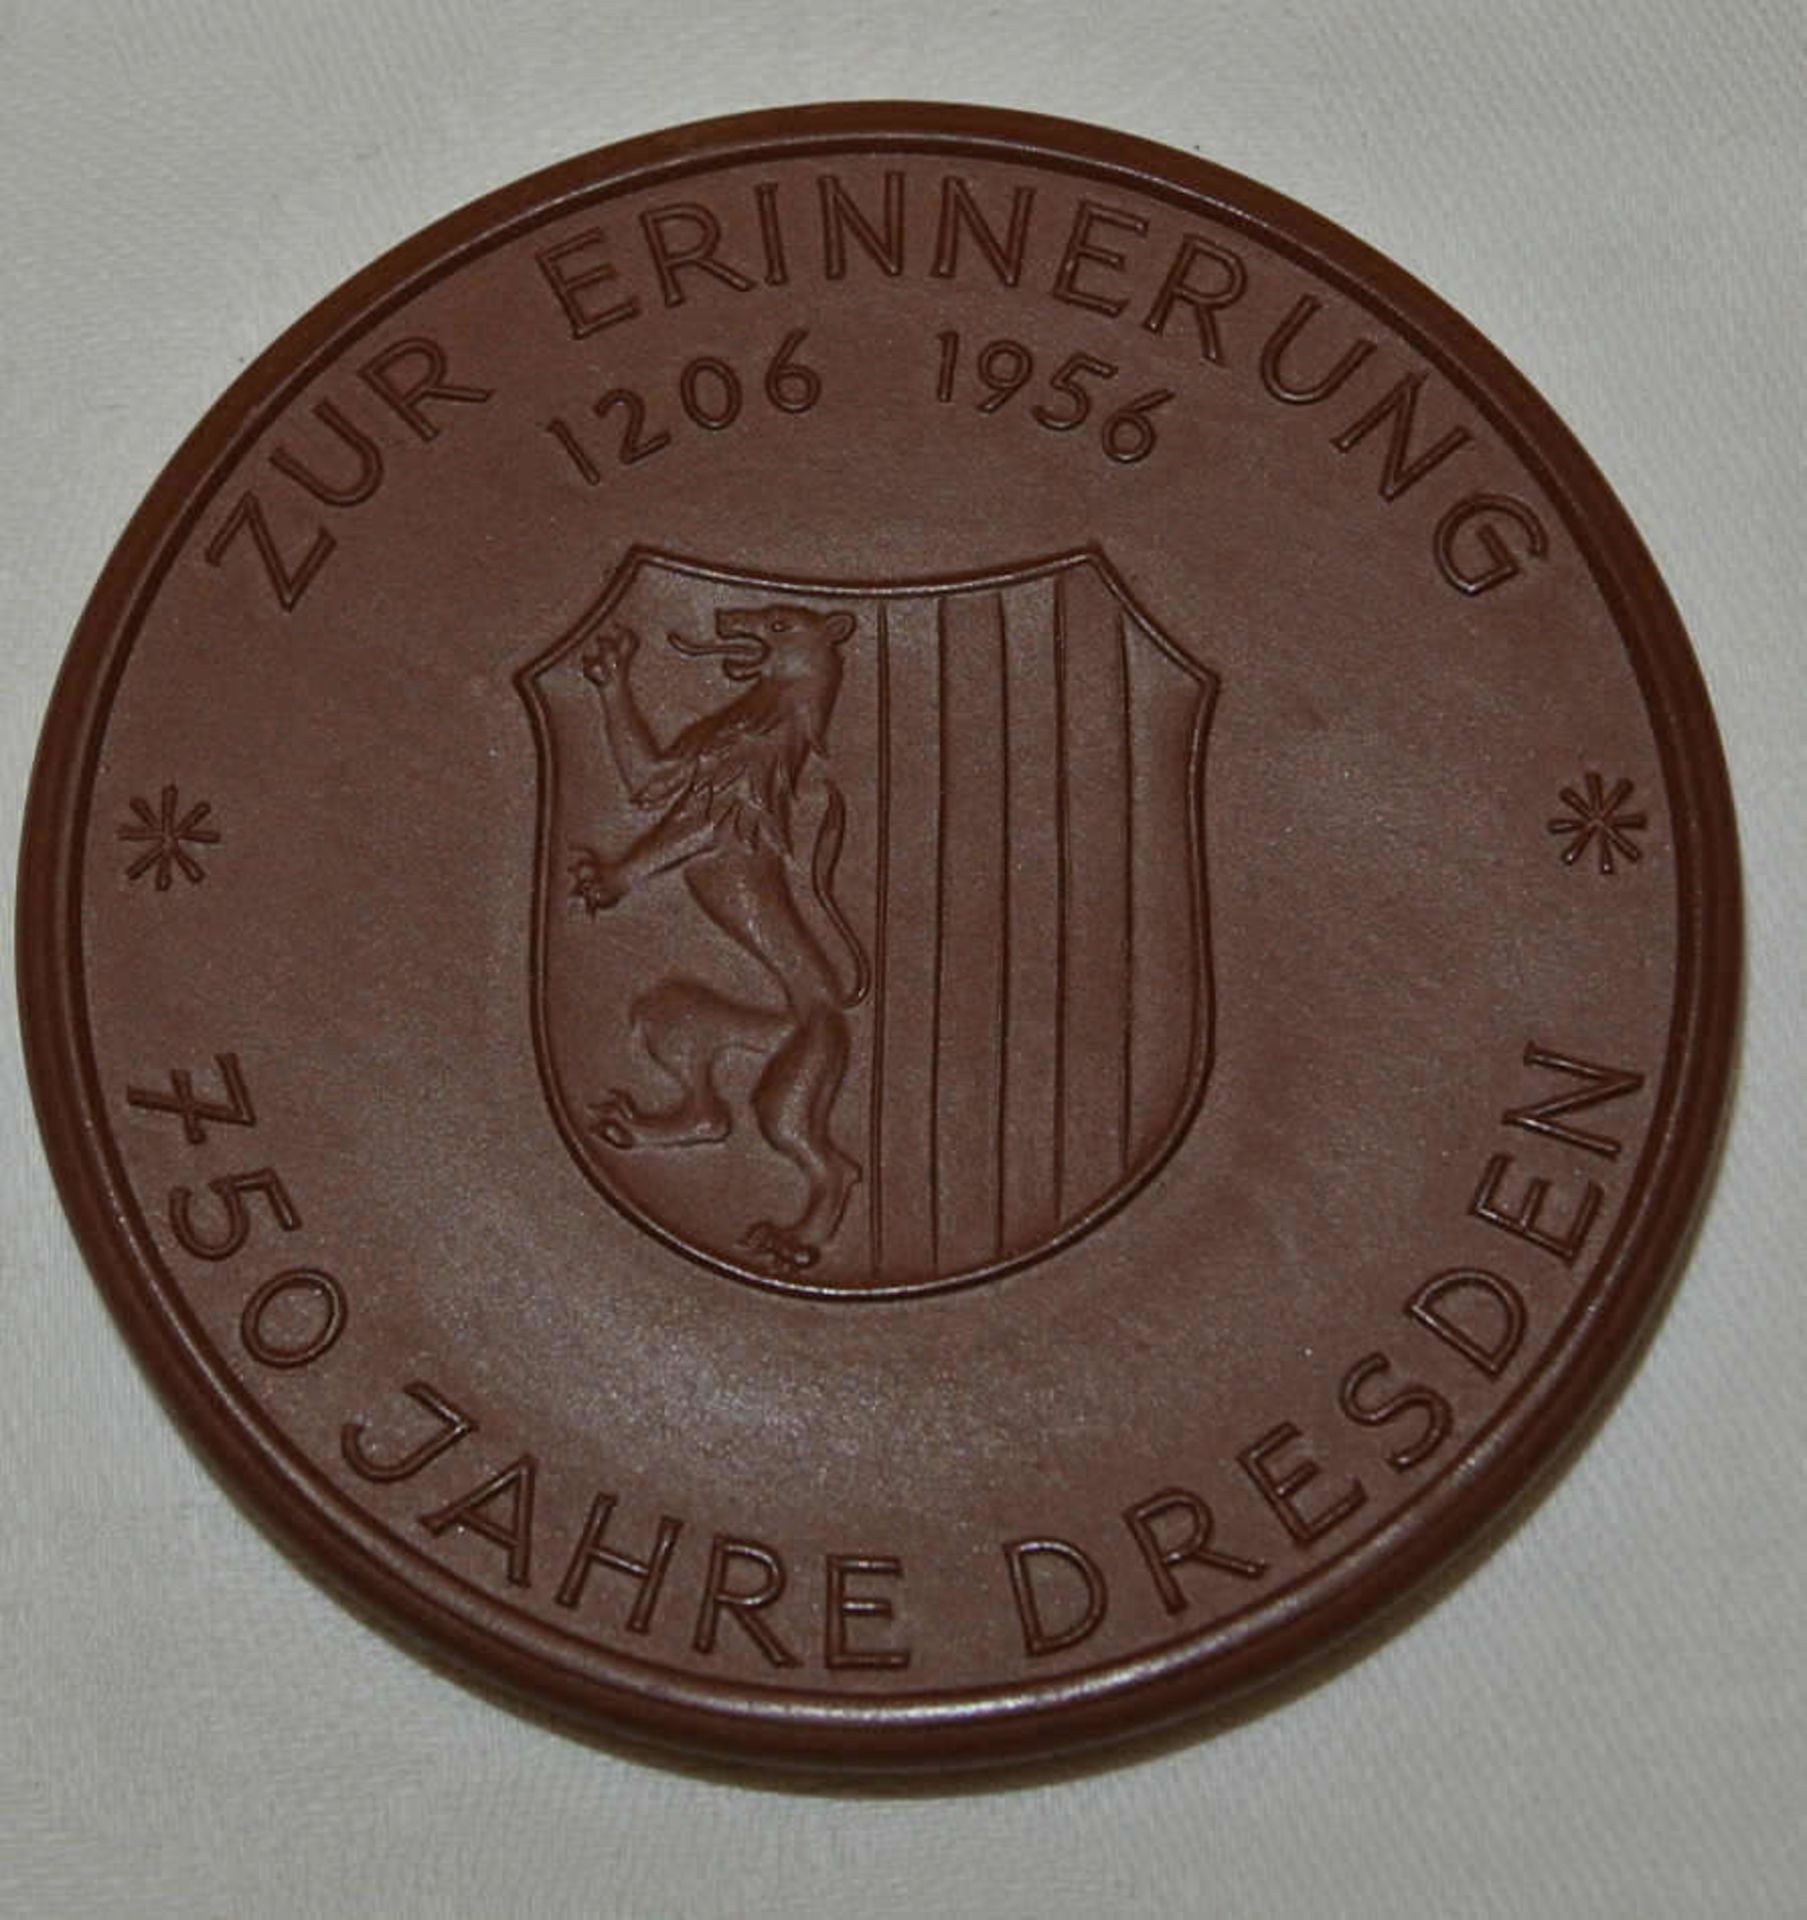 Große Meissen Porzellan-Medaille, 750 Jahre Dresden 1956. In Original Schachtel. Guter Zustand. - Bild 3 aus 3